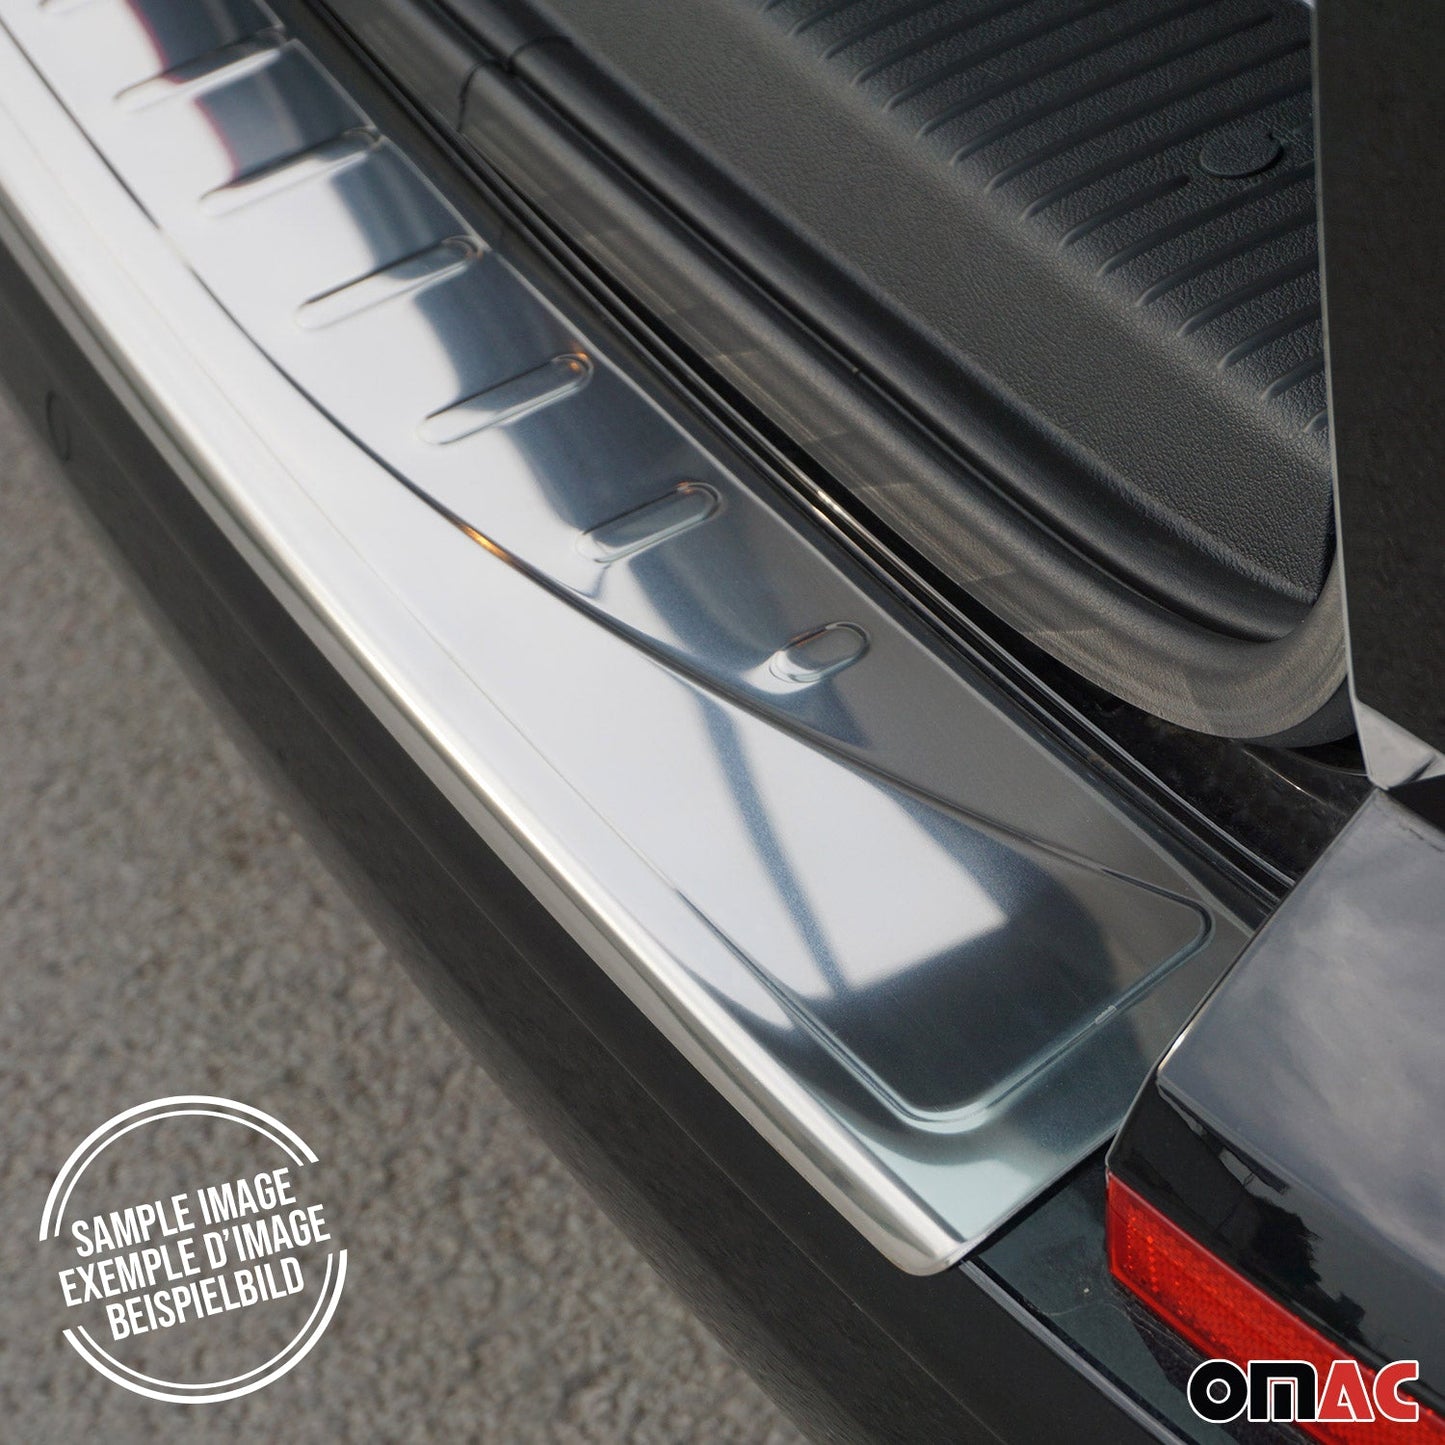 OMAC Rear Bumper Sill Cover Protector Guard for Mazda CX-5 2013-2016 Steel Silver 1Pc 4621093